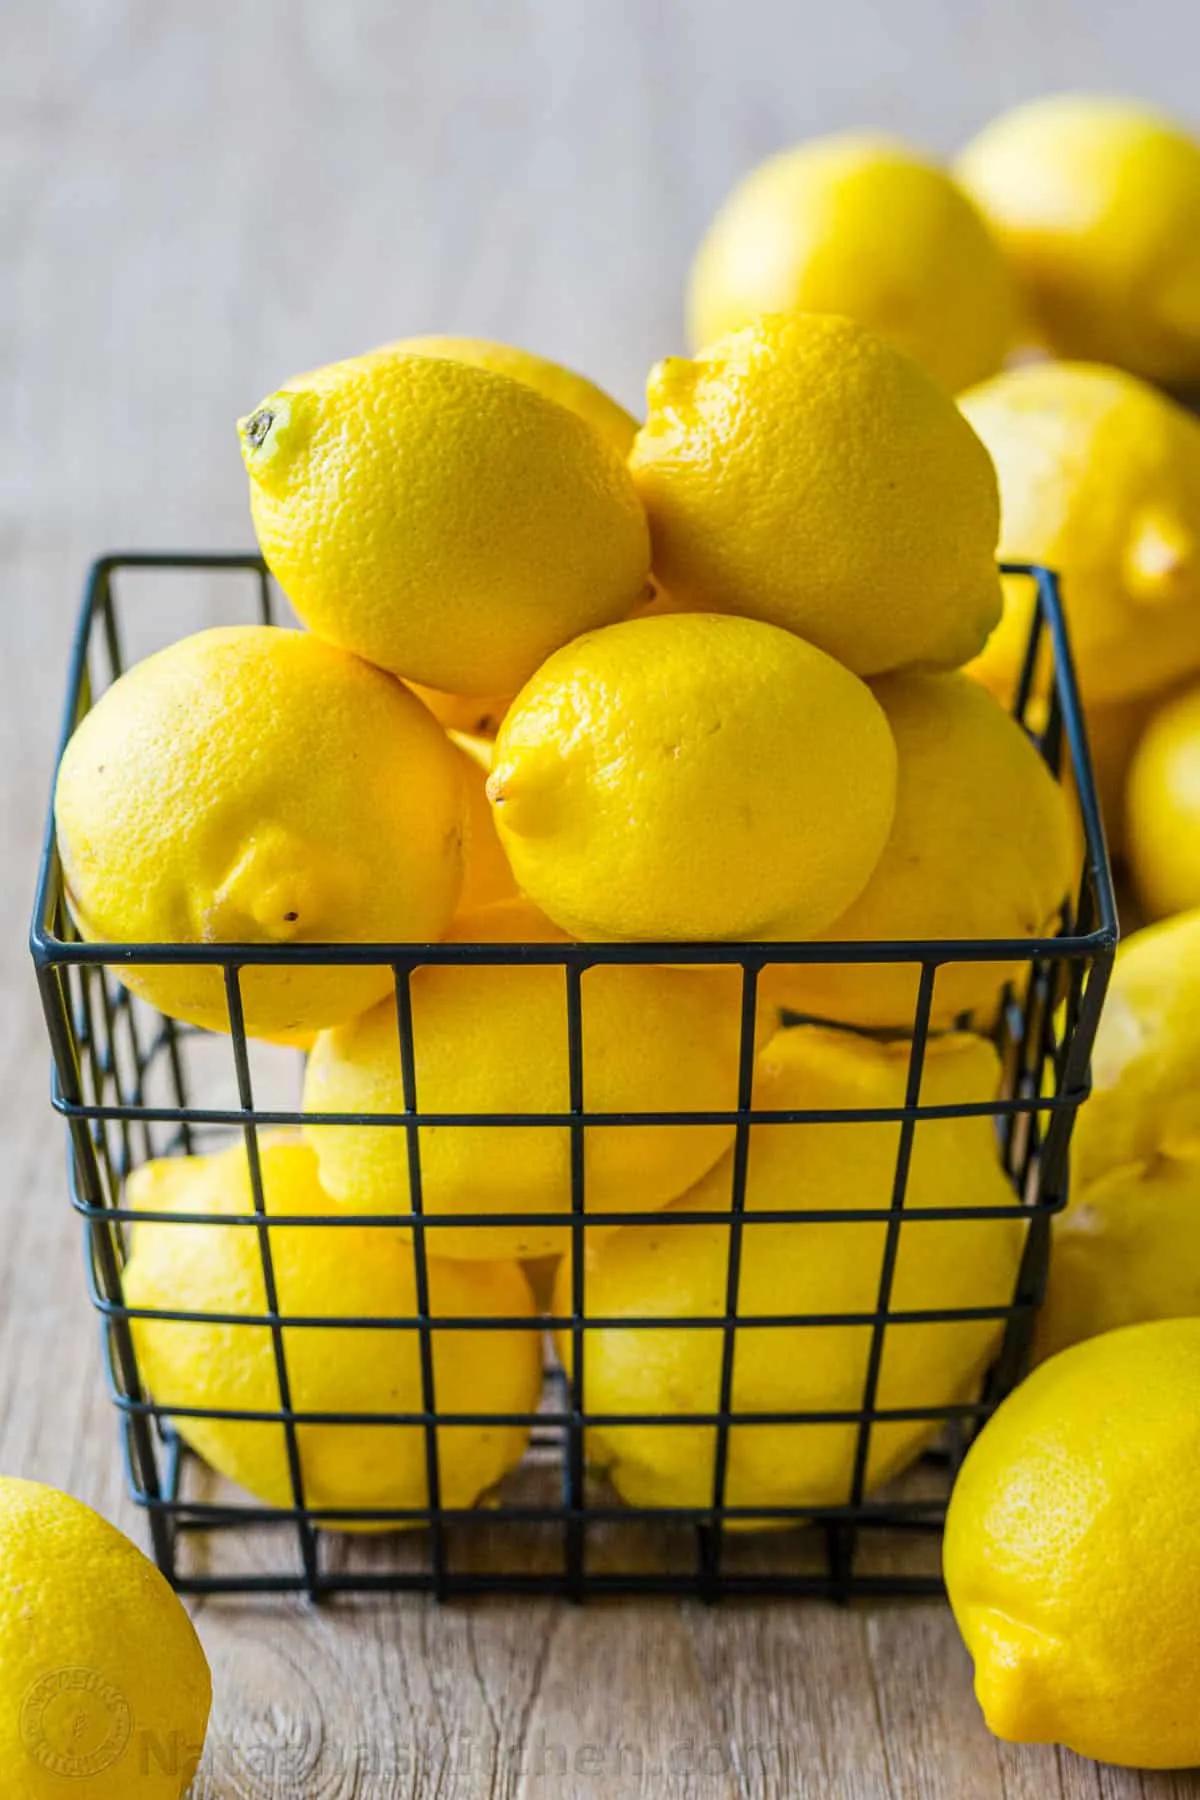 What to do with Lemons (Zesting, Juicing, Freezing) - NatashasKitchen.com